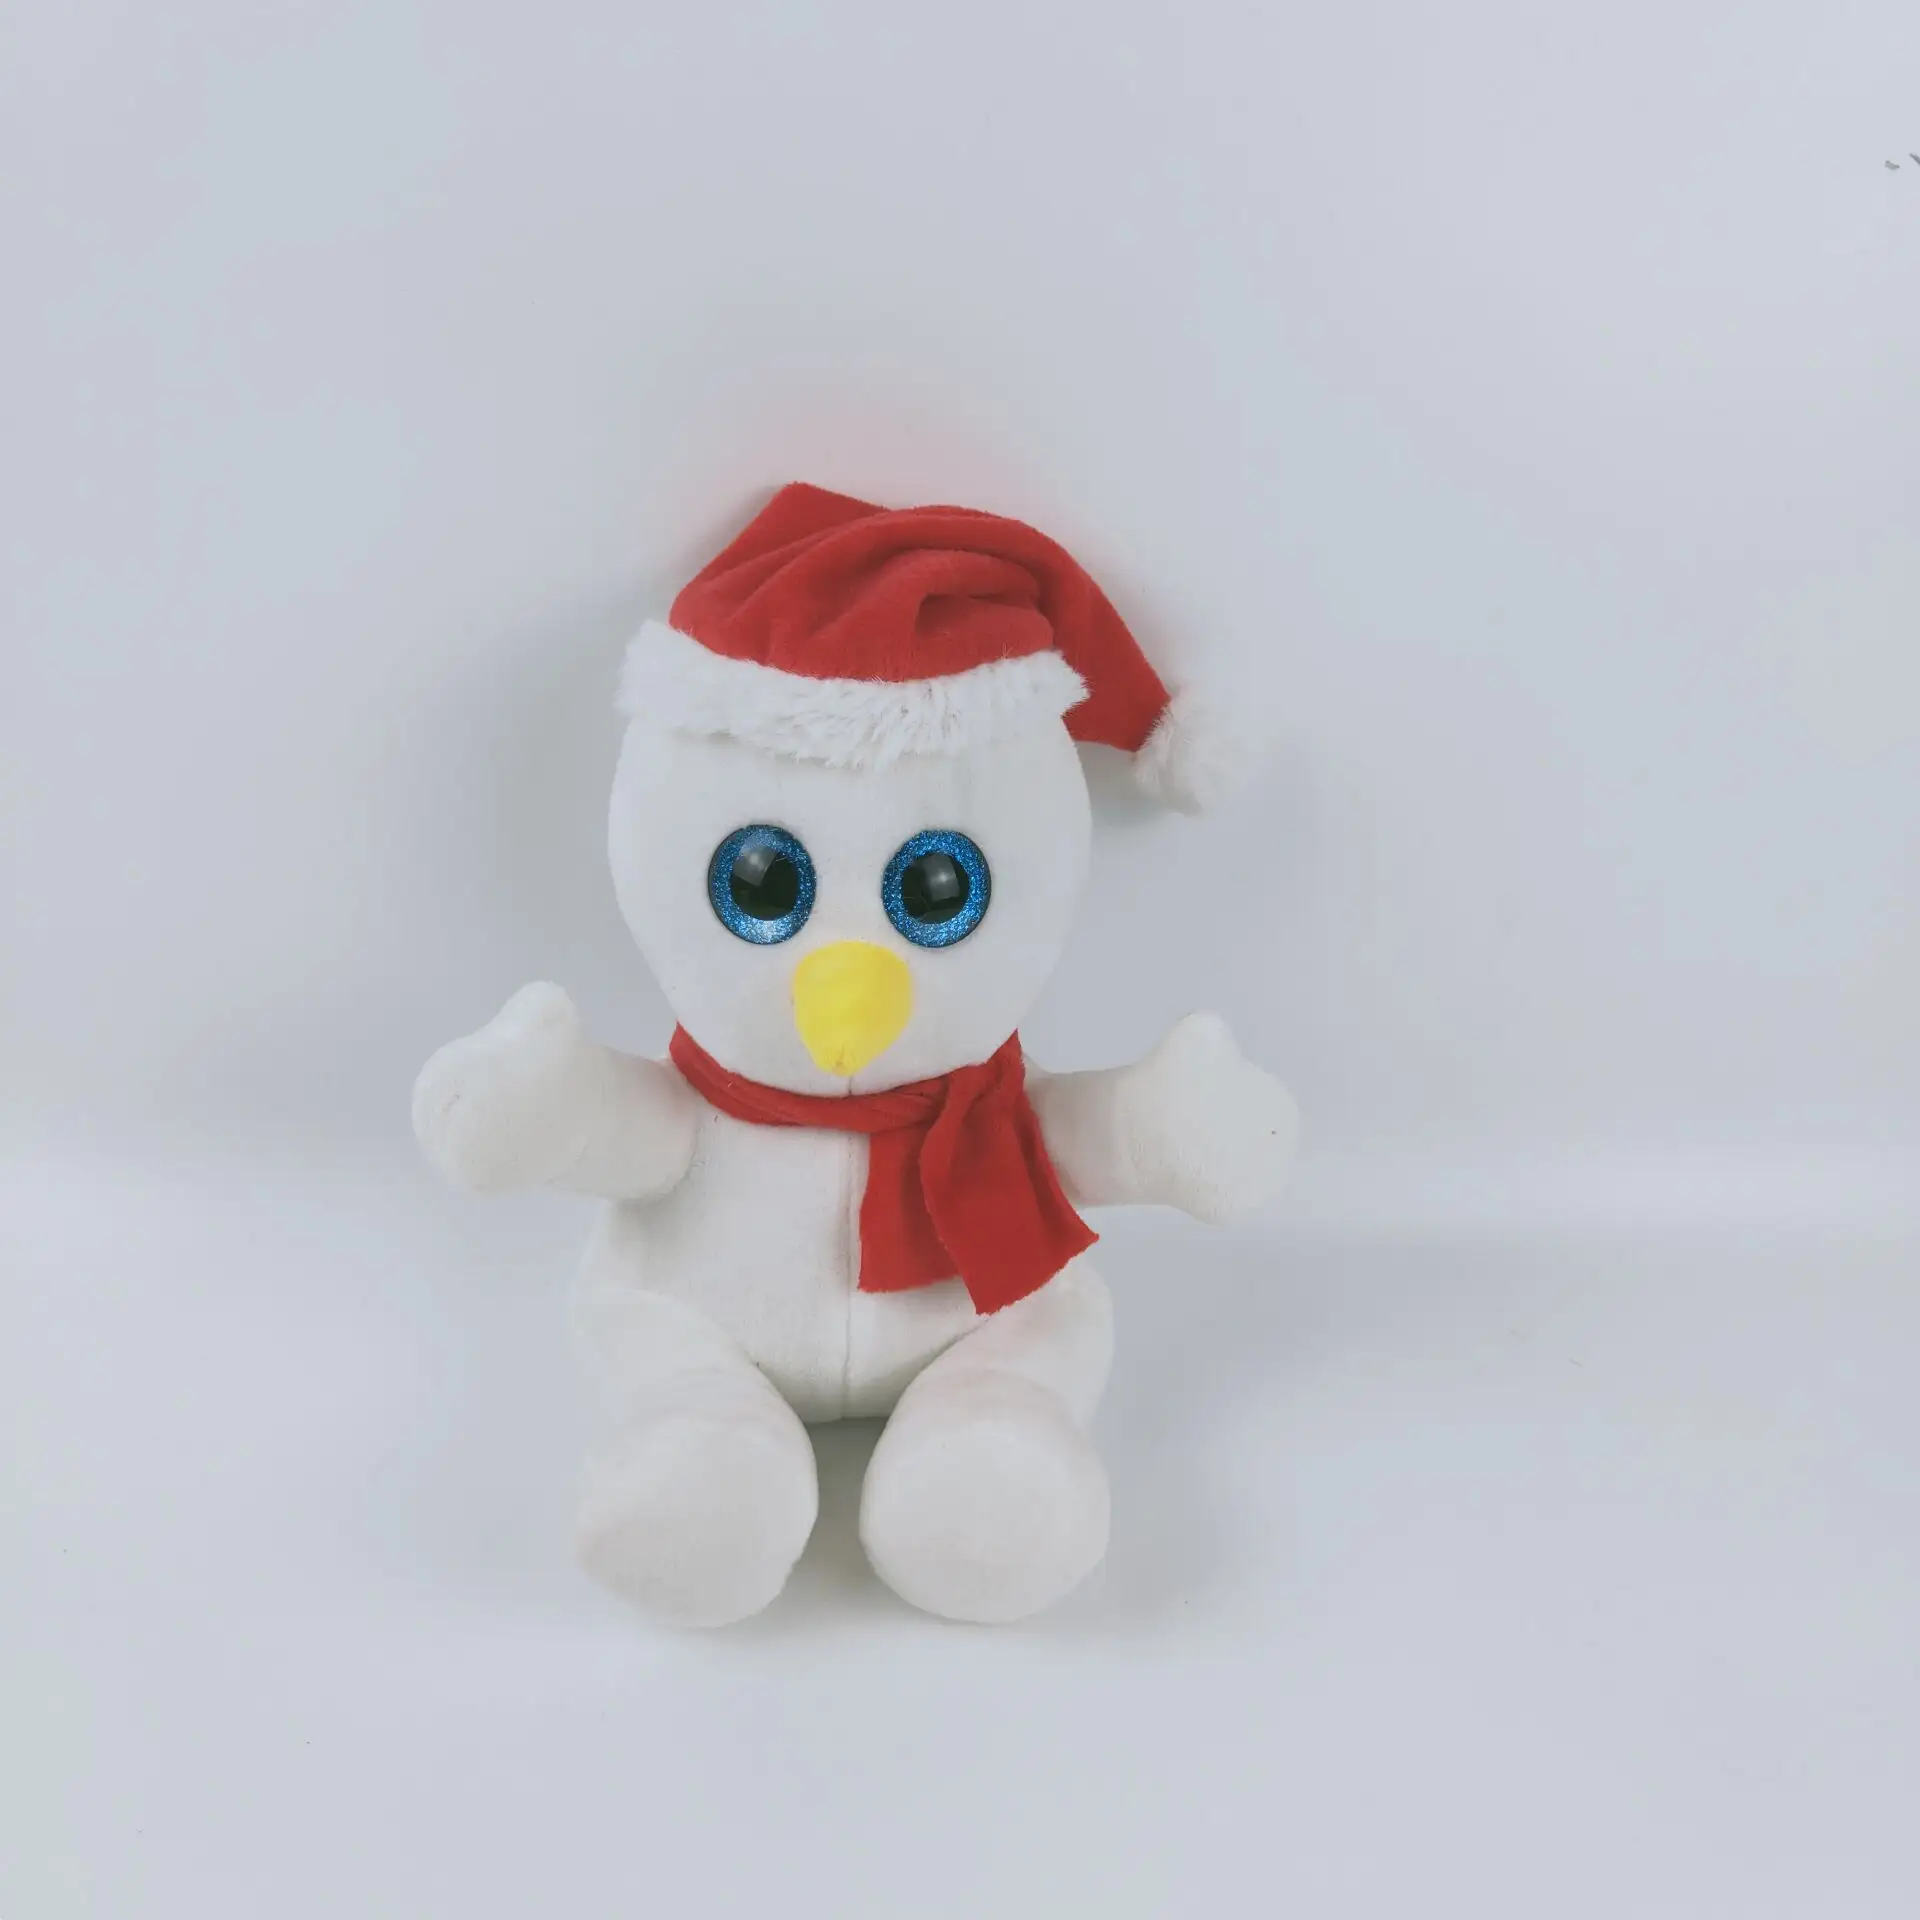 ขายส่งตุ๊กตาคริสต์มาสมนุษย์หิมะของเล่นตุ๊กตาหิมะสีขาวยัดไส้ตุ๊กตาคริสต์มาสผ้าพันคอสีแดงหมวกหิมะ